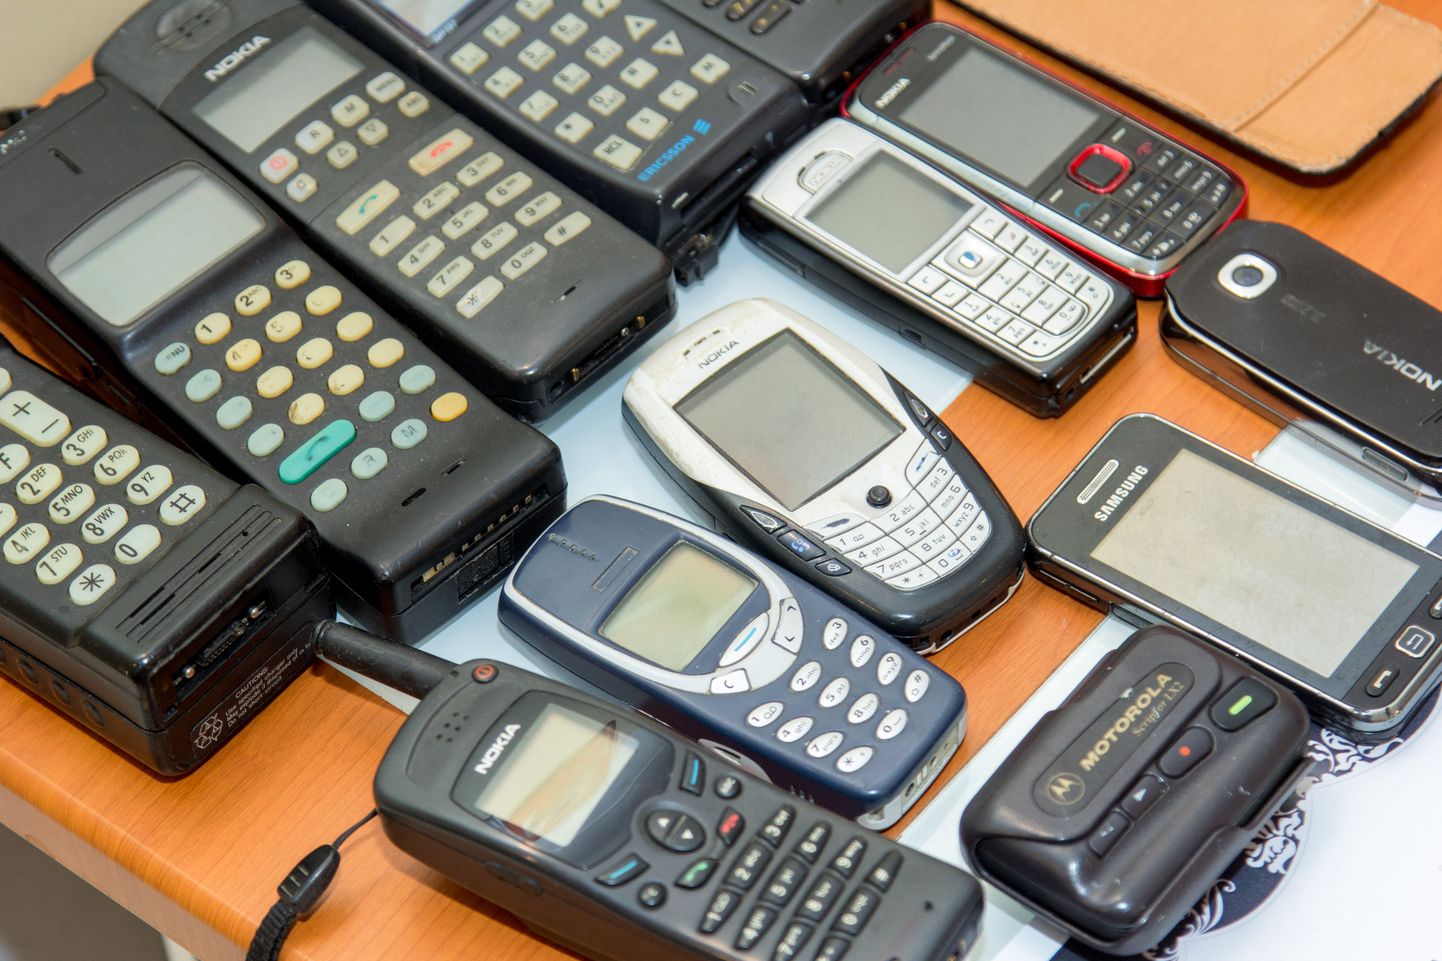 Osa vanu mobiiltelefone on leidnud hoiukoha kollektsionääride käes. Paraku pole kõik neist töökorras ning ühtki ei kasutata igapäevase sidevahendina.